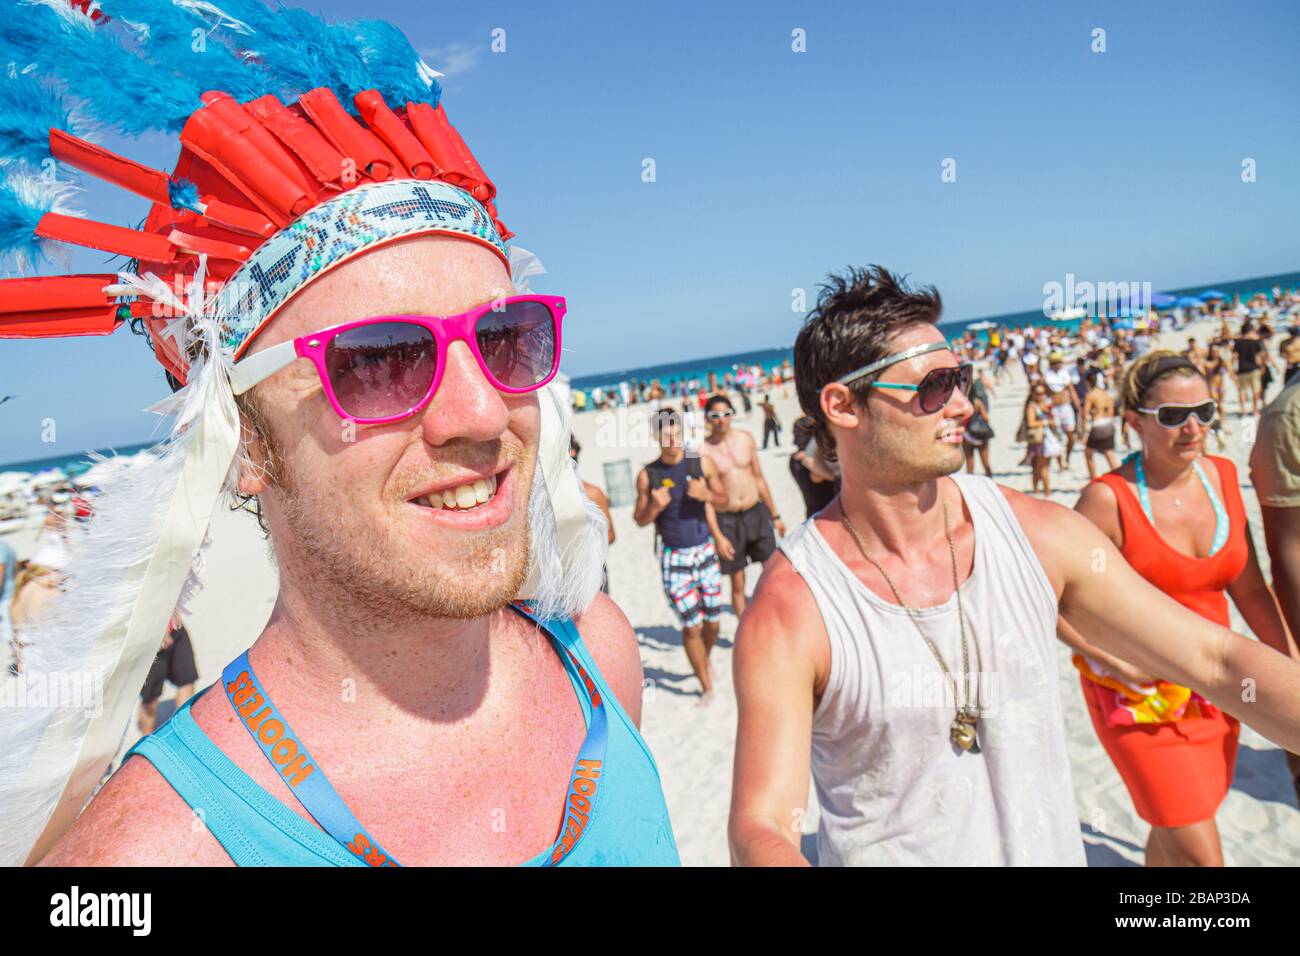 Miami Beach Florida, vacances de printemps, Funkshion Fashion week, entrée à l'événement, homme hommes hommes hommes adultes, héaddress indien, FL110331110 Banque D'Images